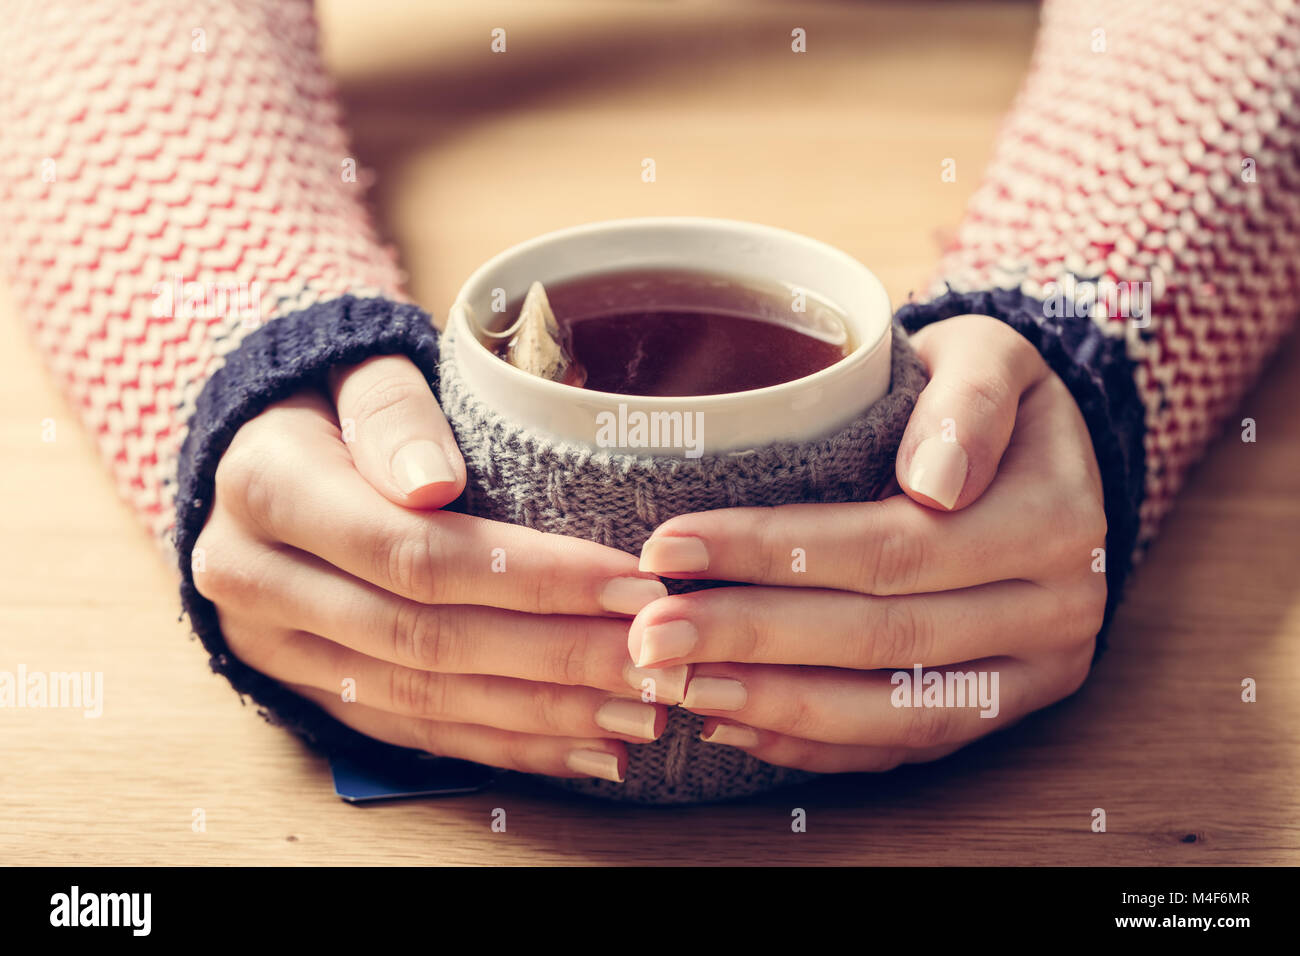 Tasse de thé chaud réchauffement de la Woman's hands en rétro sauteur. Banque D'Images